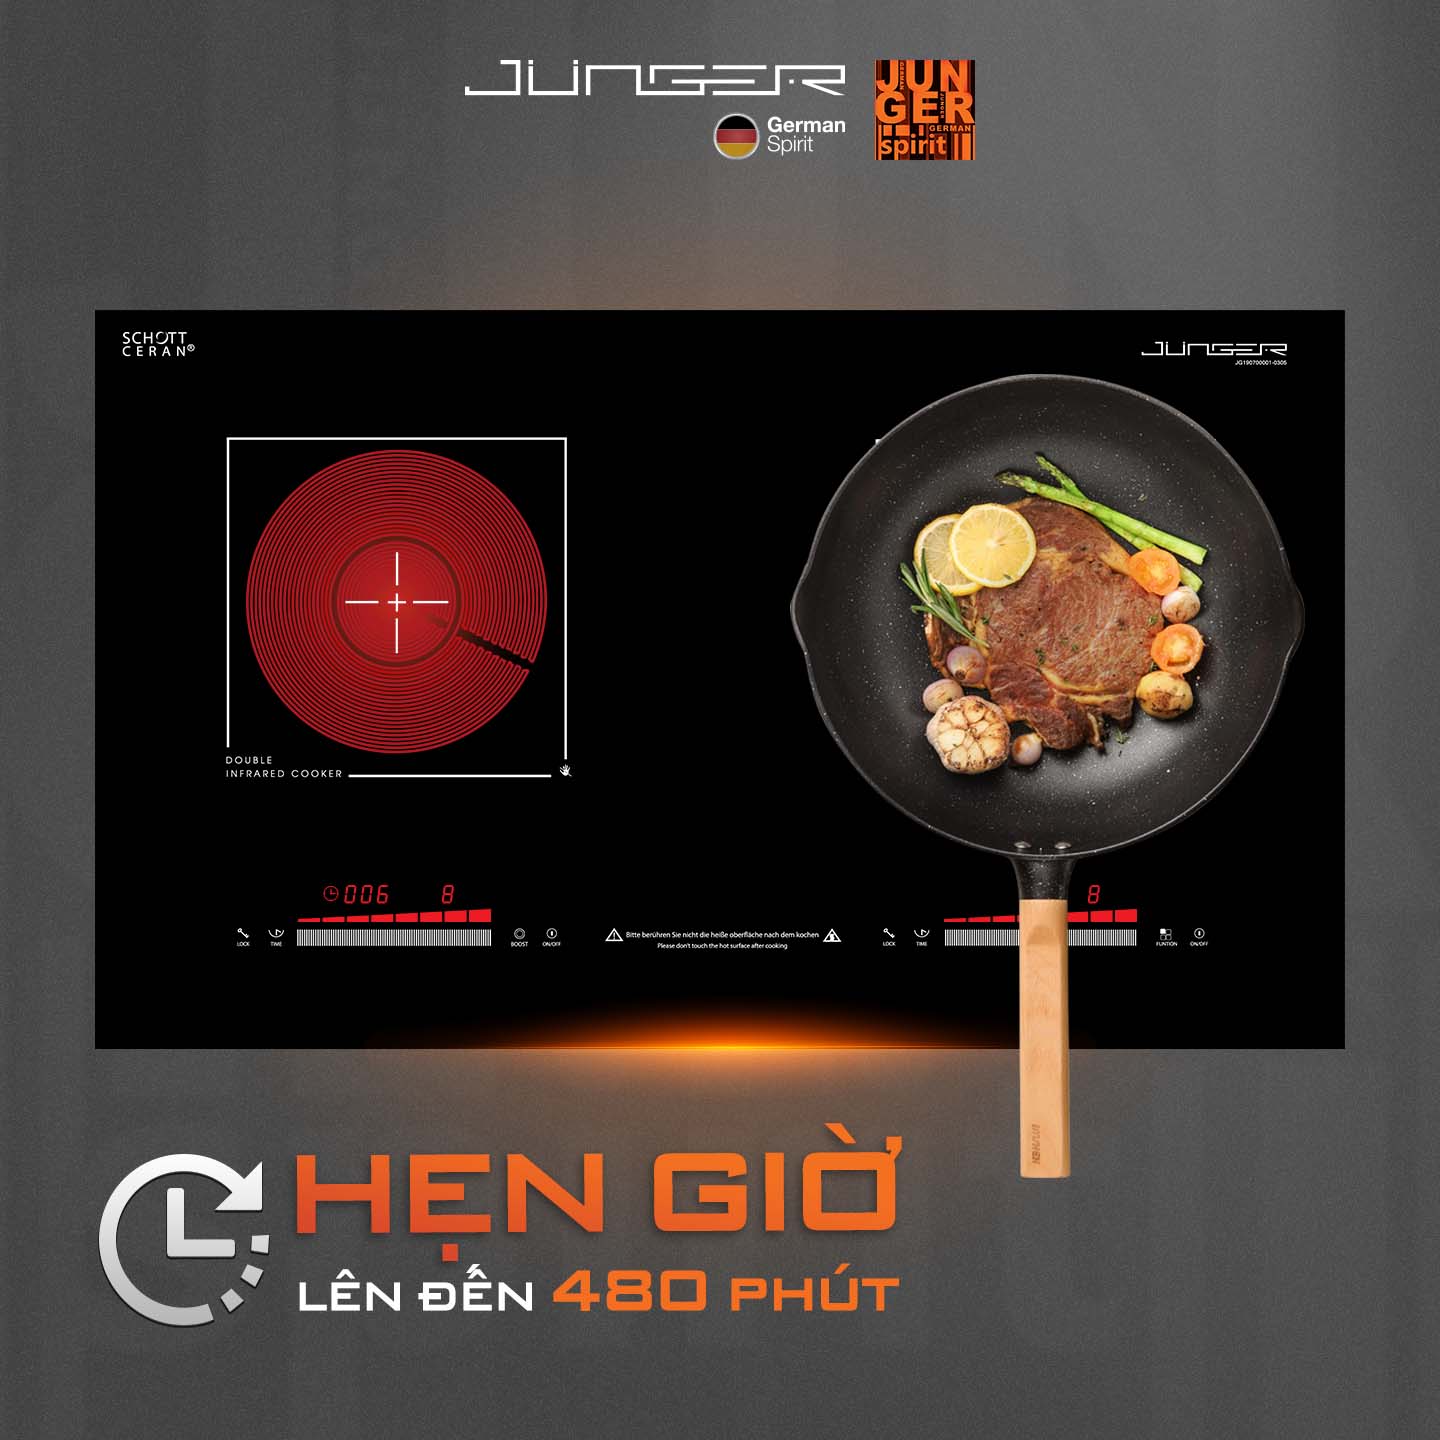 Junger MTD-18 được trang bị rất nhiều tính năng thông minh, đảm bảo an toàn tuyệt đối cho bếp và người sử dụng.